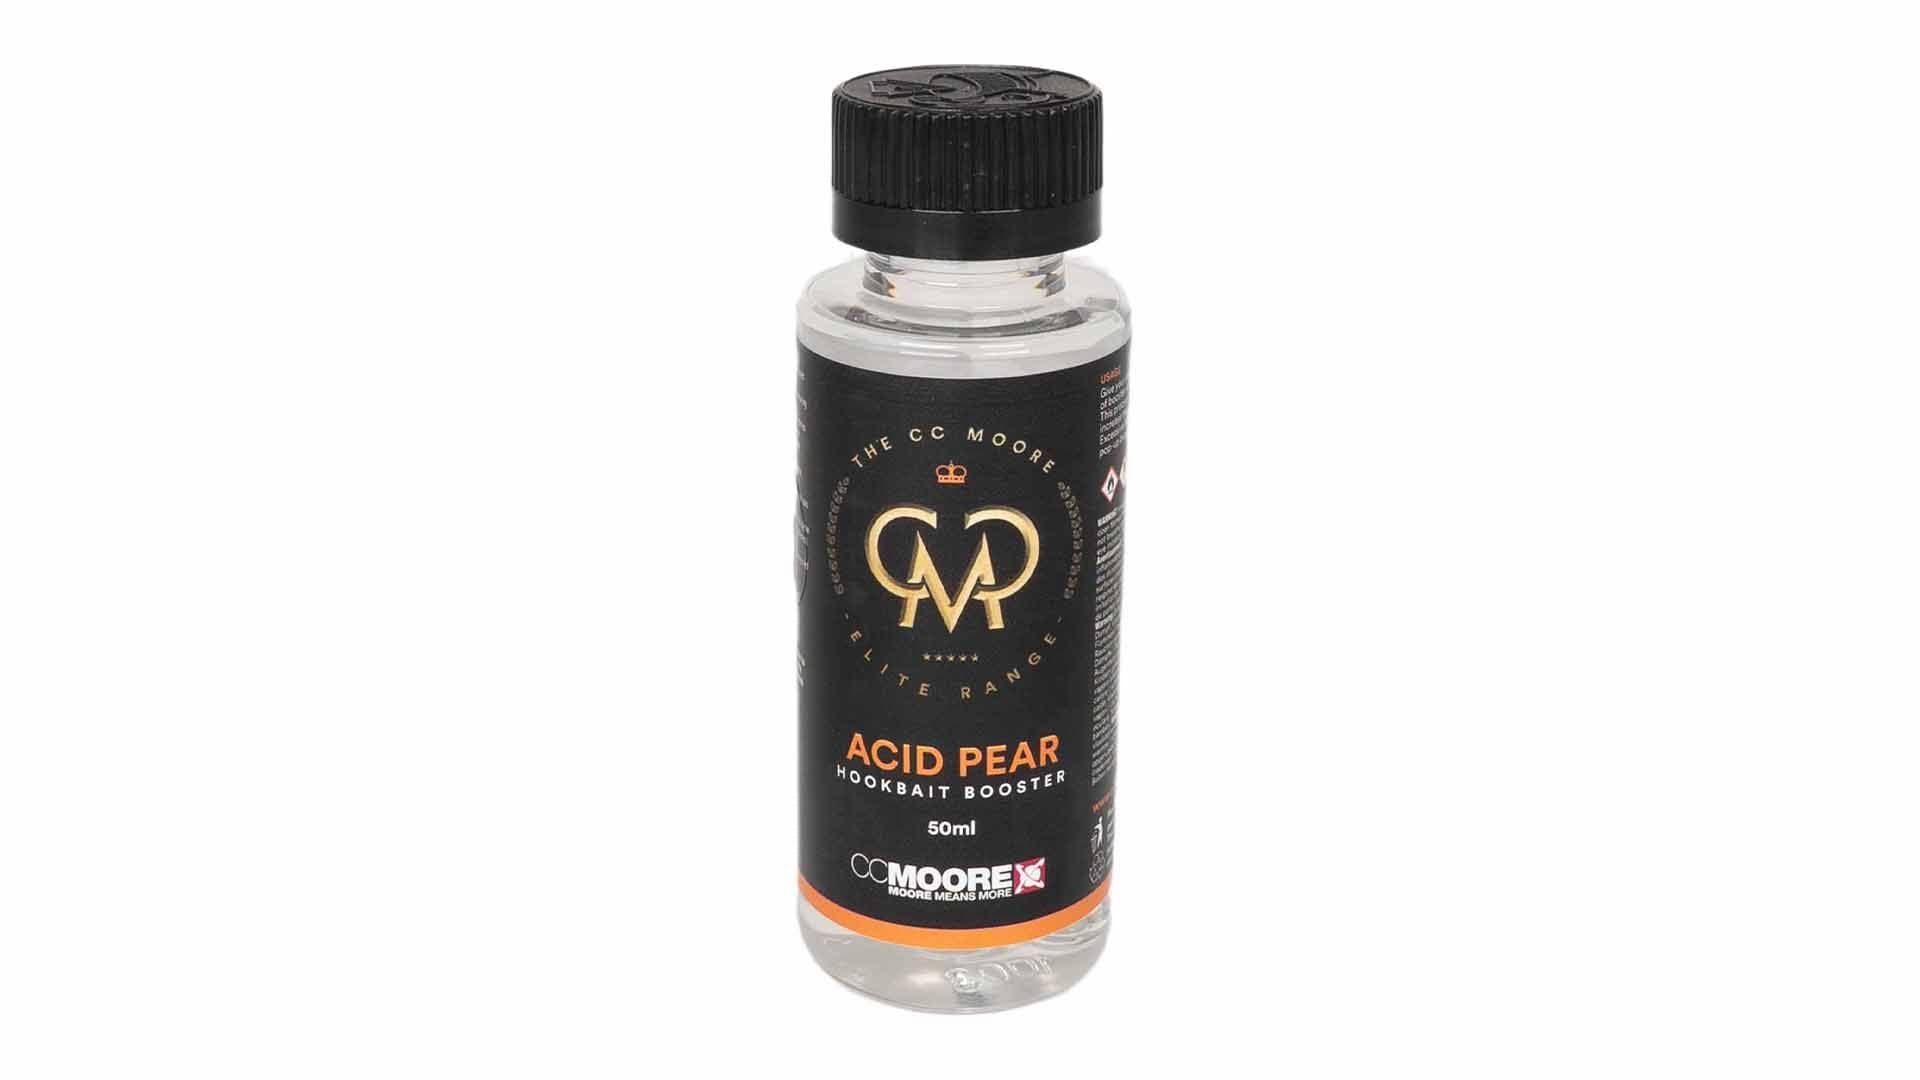 CC Moore Elite Acid Pear hookbait booster 50ml